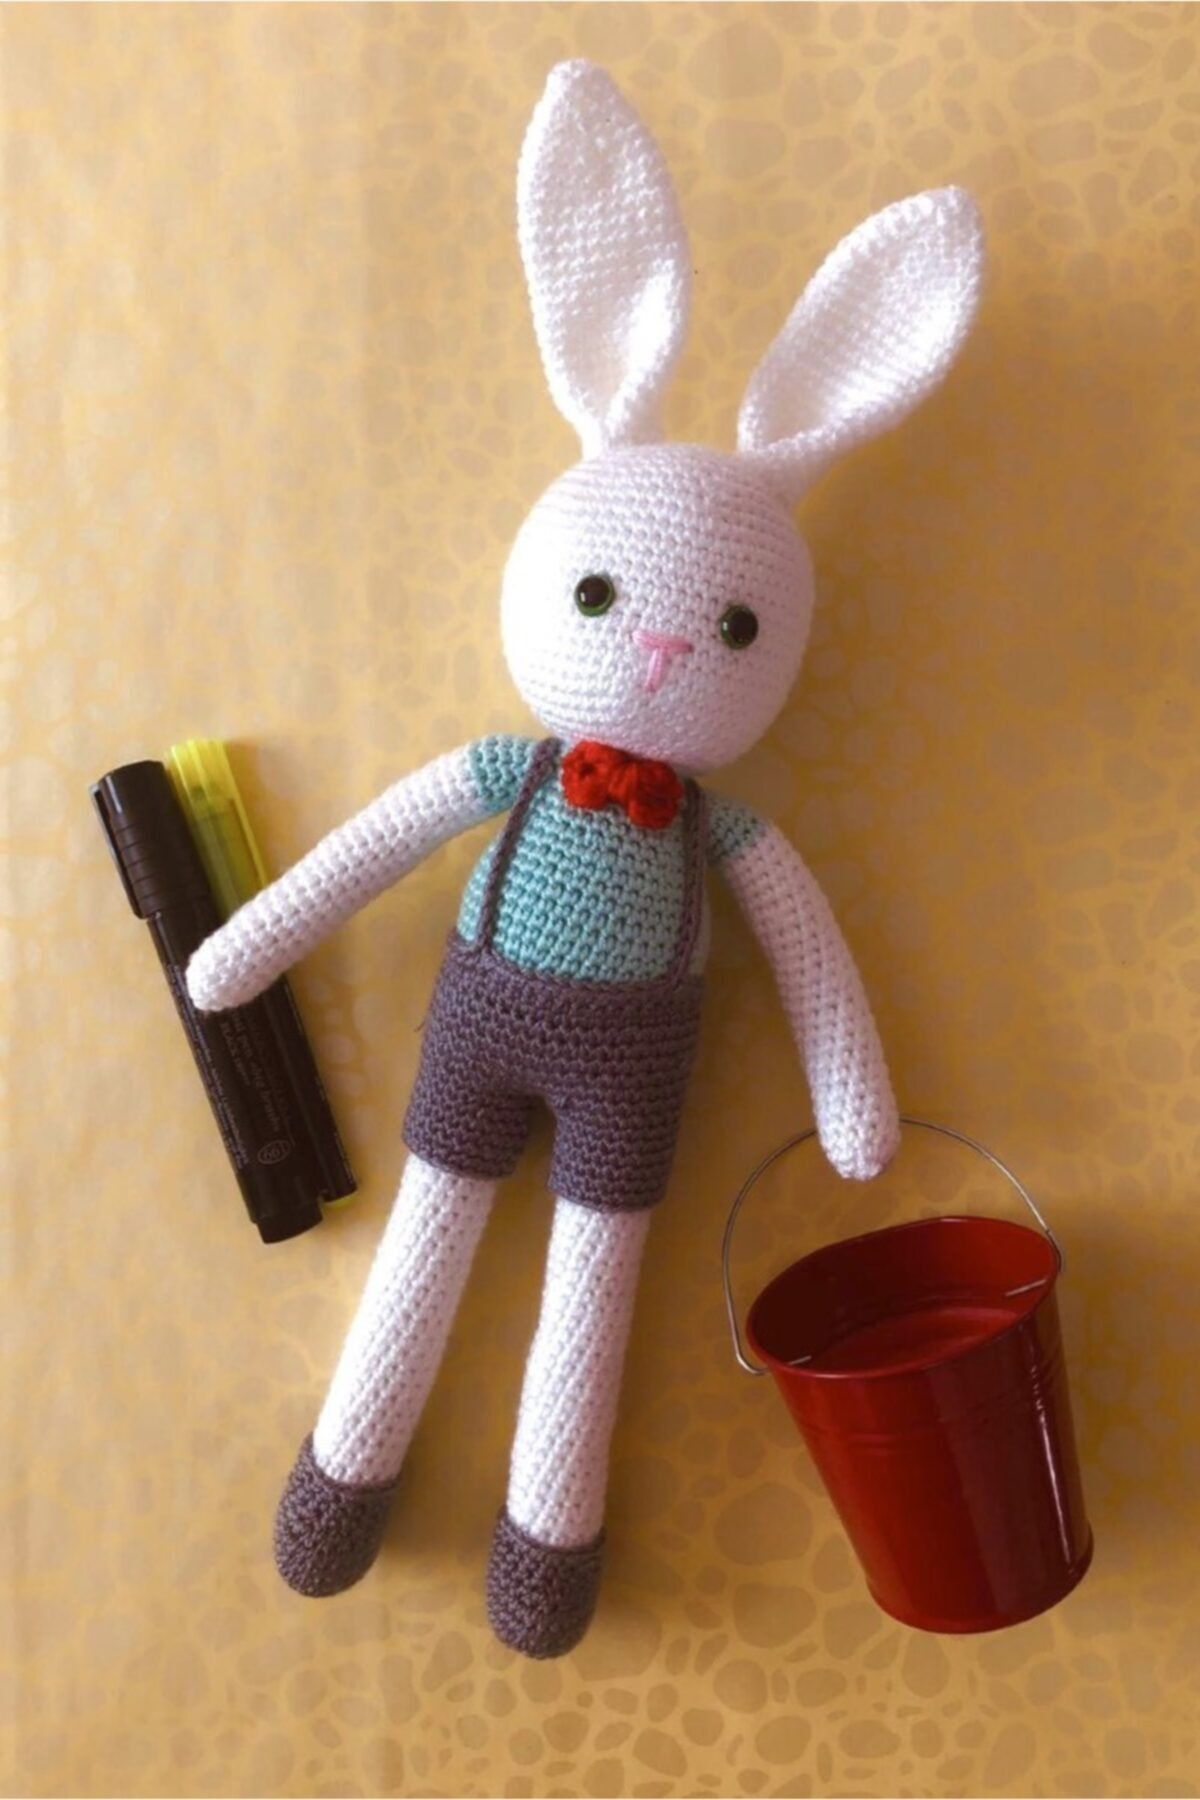 Organik Toys Organik Oyuncak Amigurumi Örgü Sevimli Beyaz Tavşan